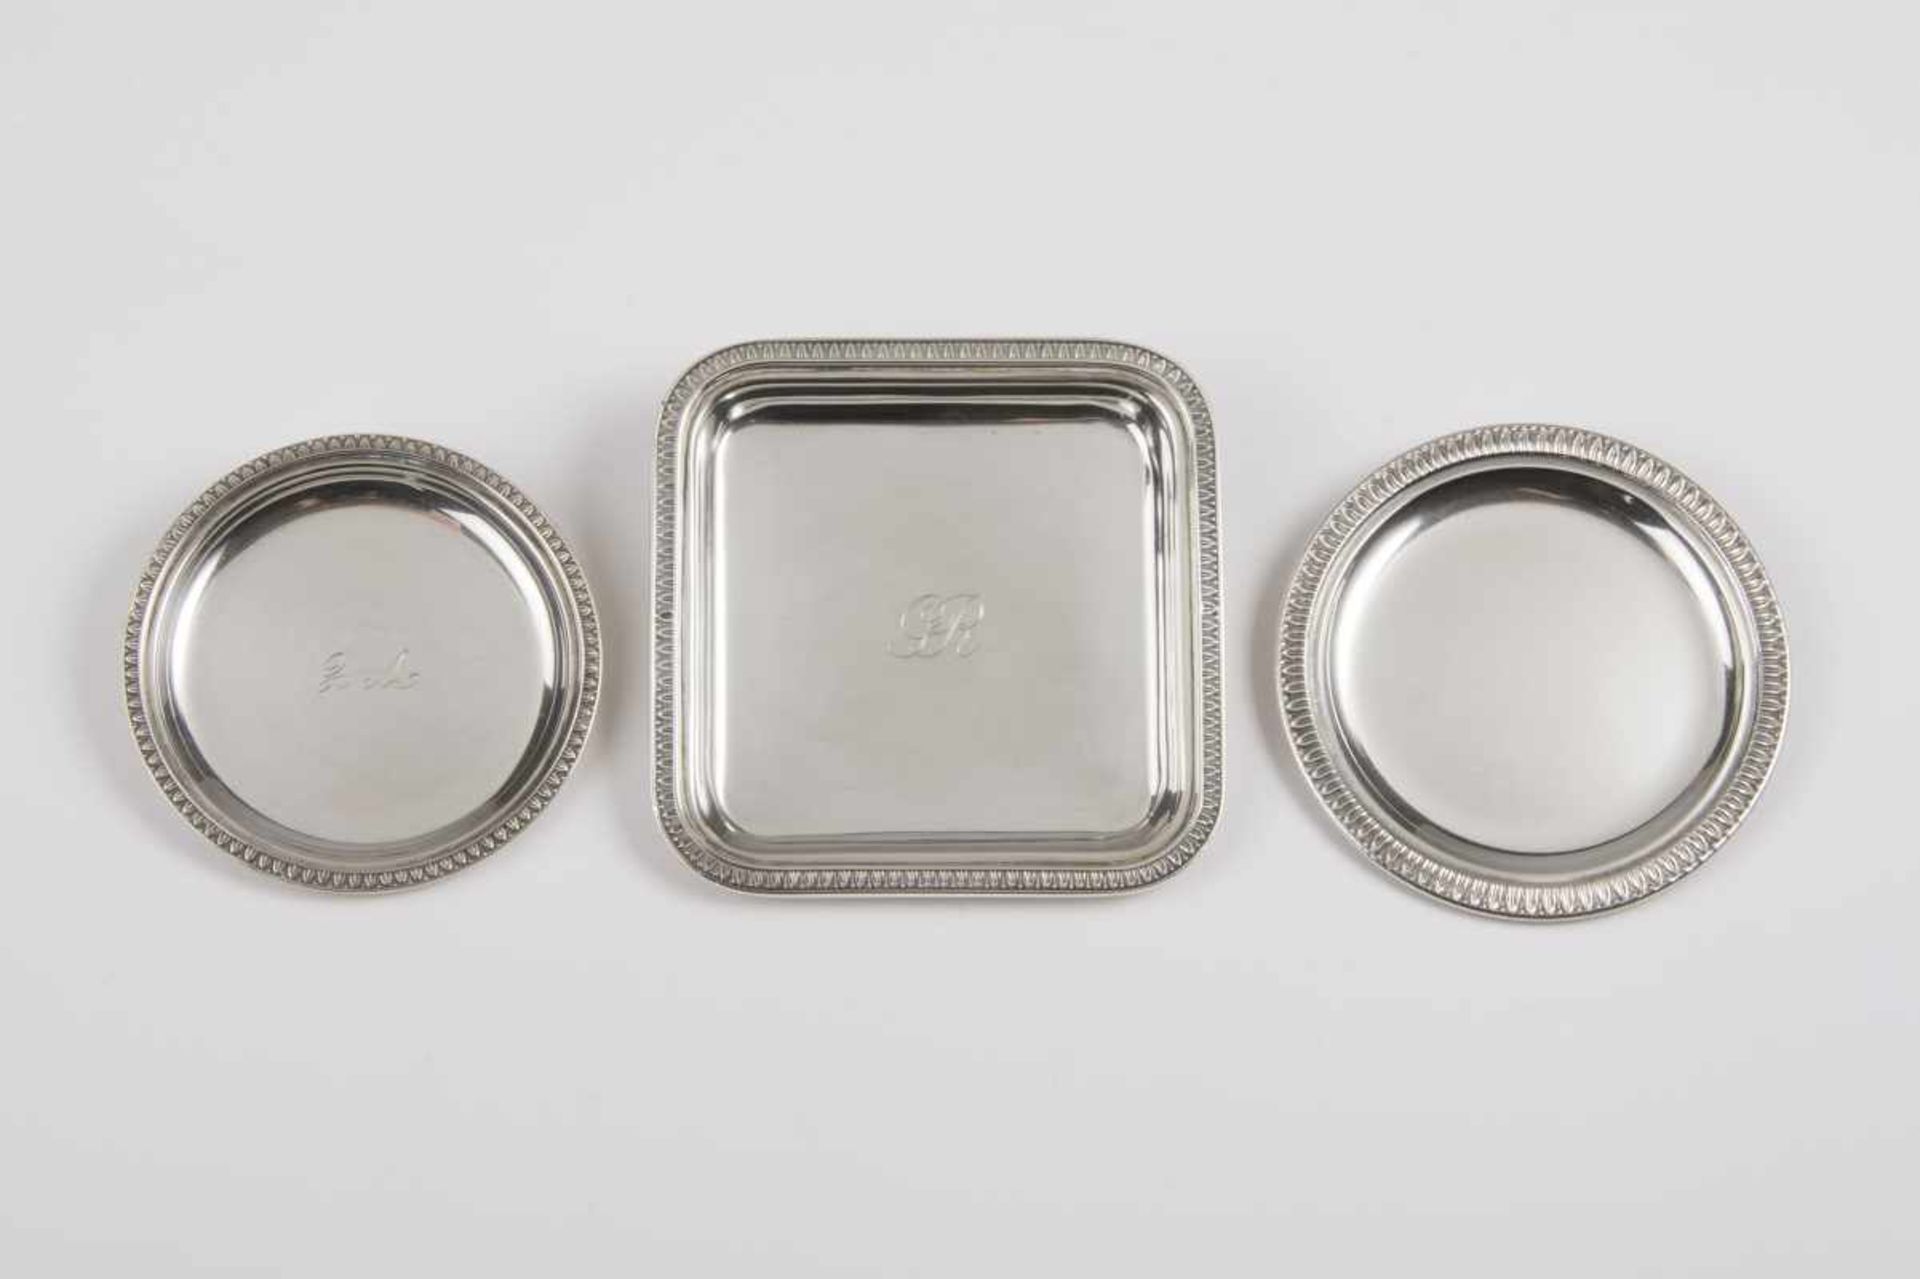 3 silberne kleine flache Tassendavon: 1 rechteckige Tasse, 10x10 cm, 2 runde Tassen, 9 und 8 cm,